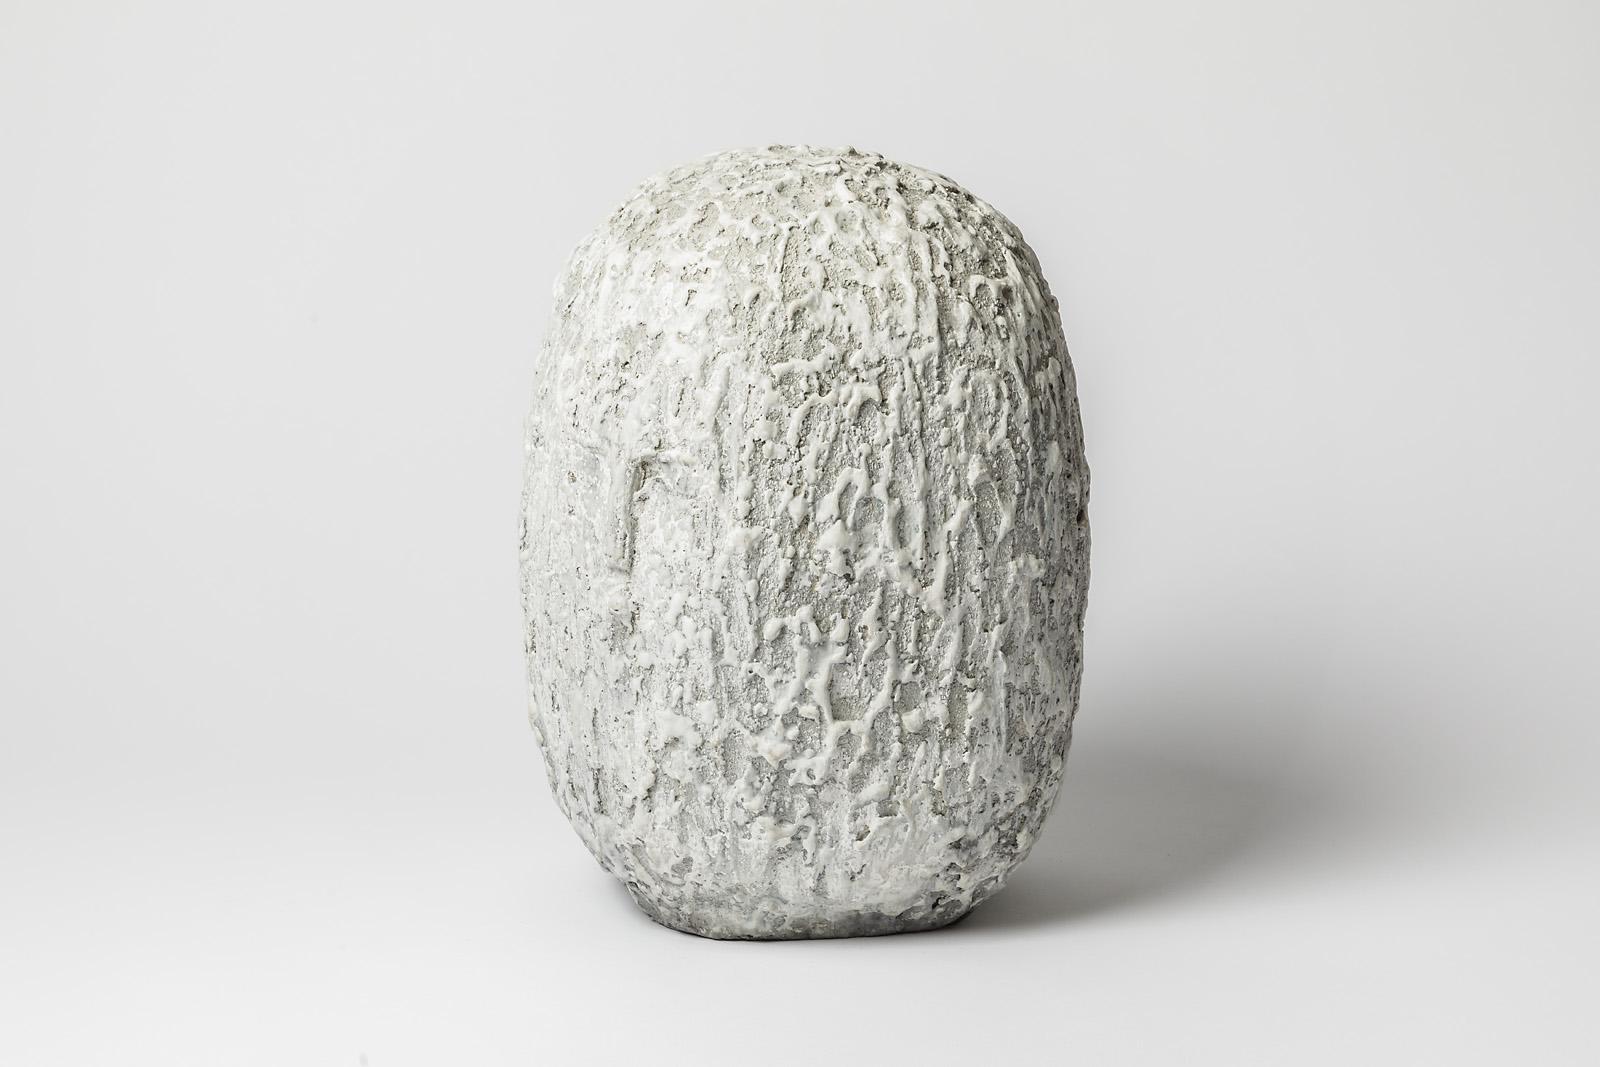 Sculpture en céramique à décor de glaçure blanche représentant une tête par Gisèle Buthod-Garçon.
Conditions d'origine parfaites.
Signé sous la base.
Vers 2017.
Pièce unique.